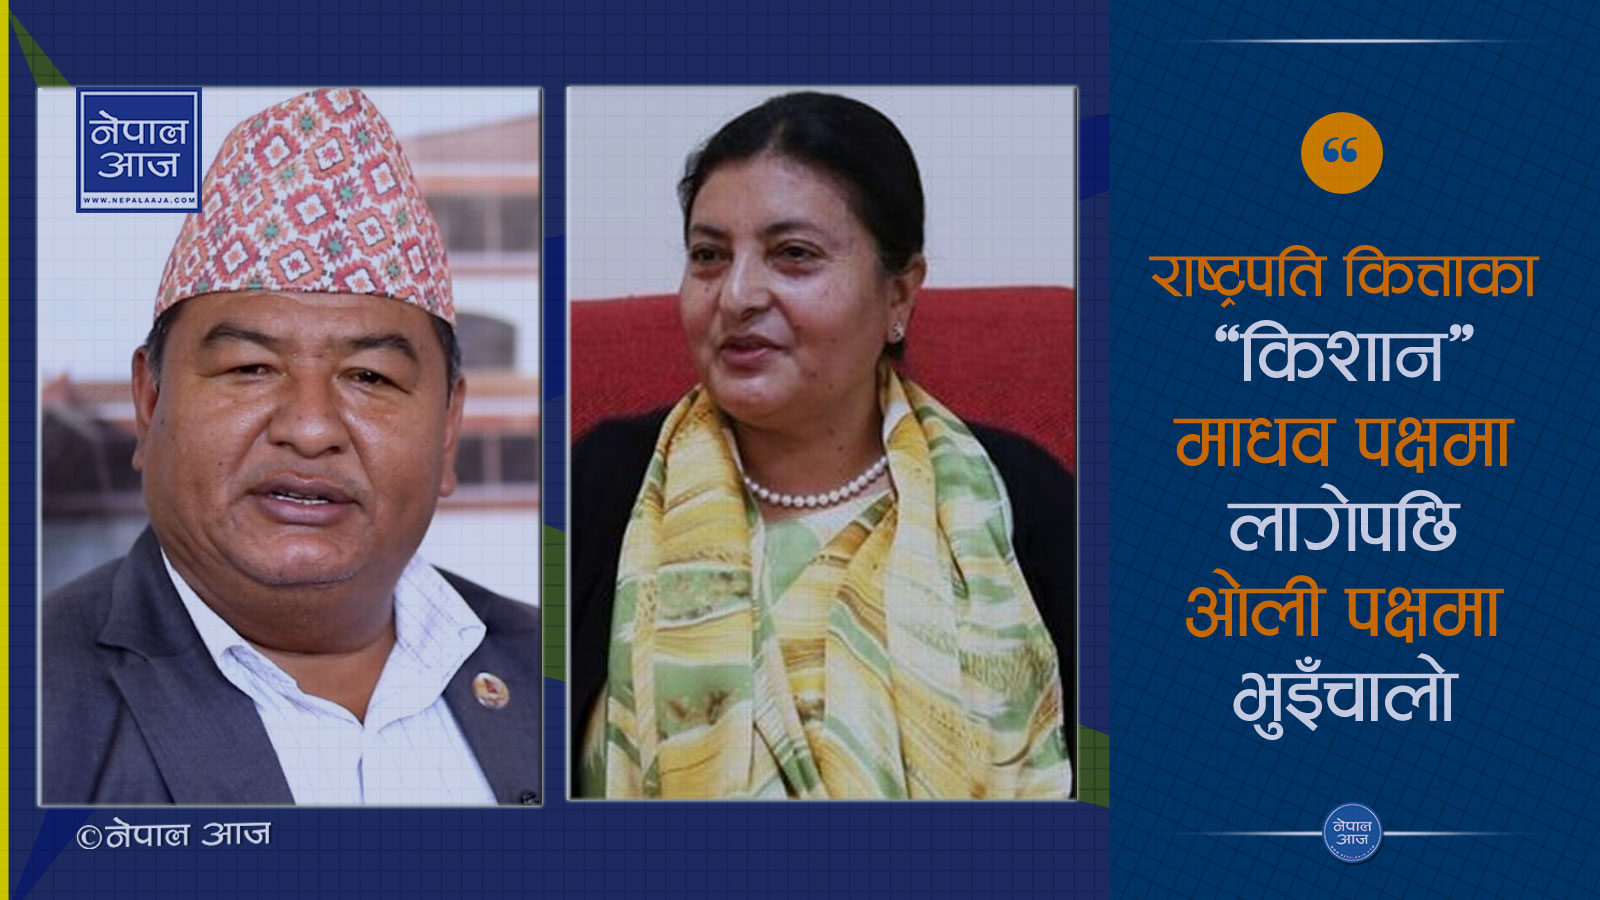 माधव नेपाललाई राष्ट्रपतिको साथ, यस्तो छ भण्डारीको वाध्यता